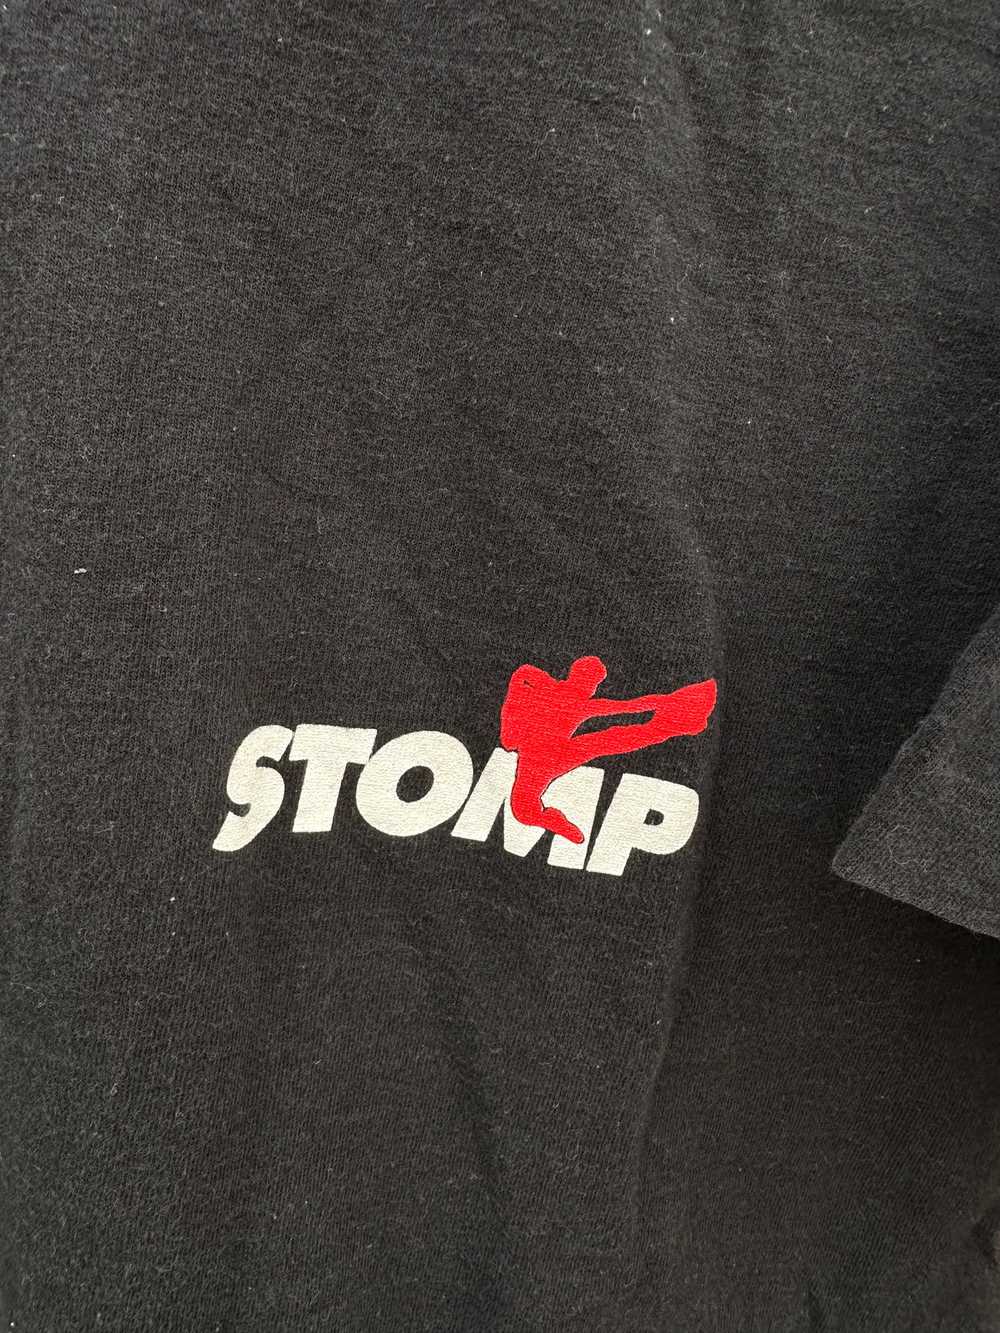 '96-'97 Stomp Tour T-shirt - image 3